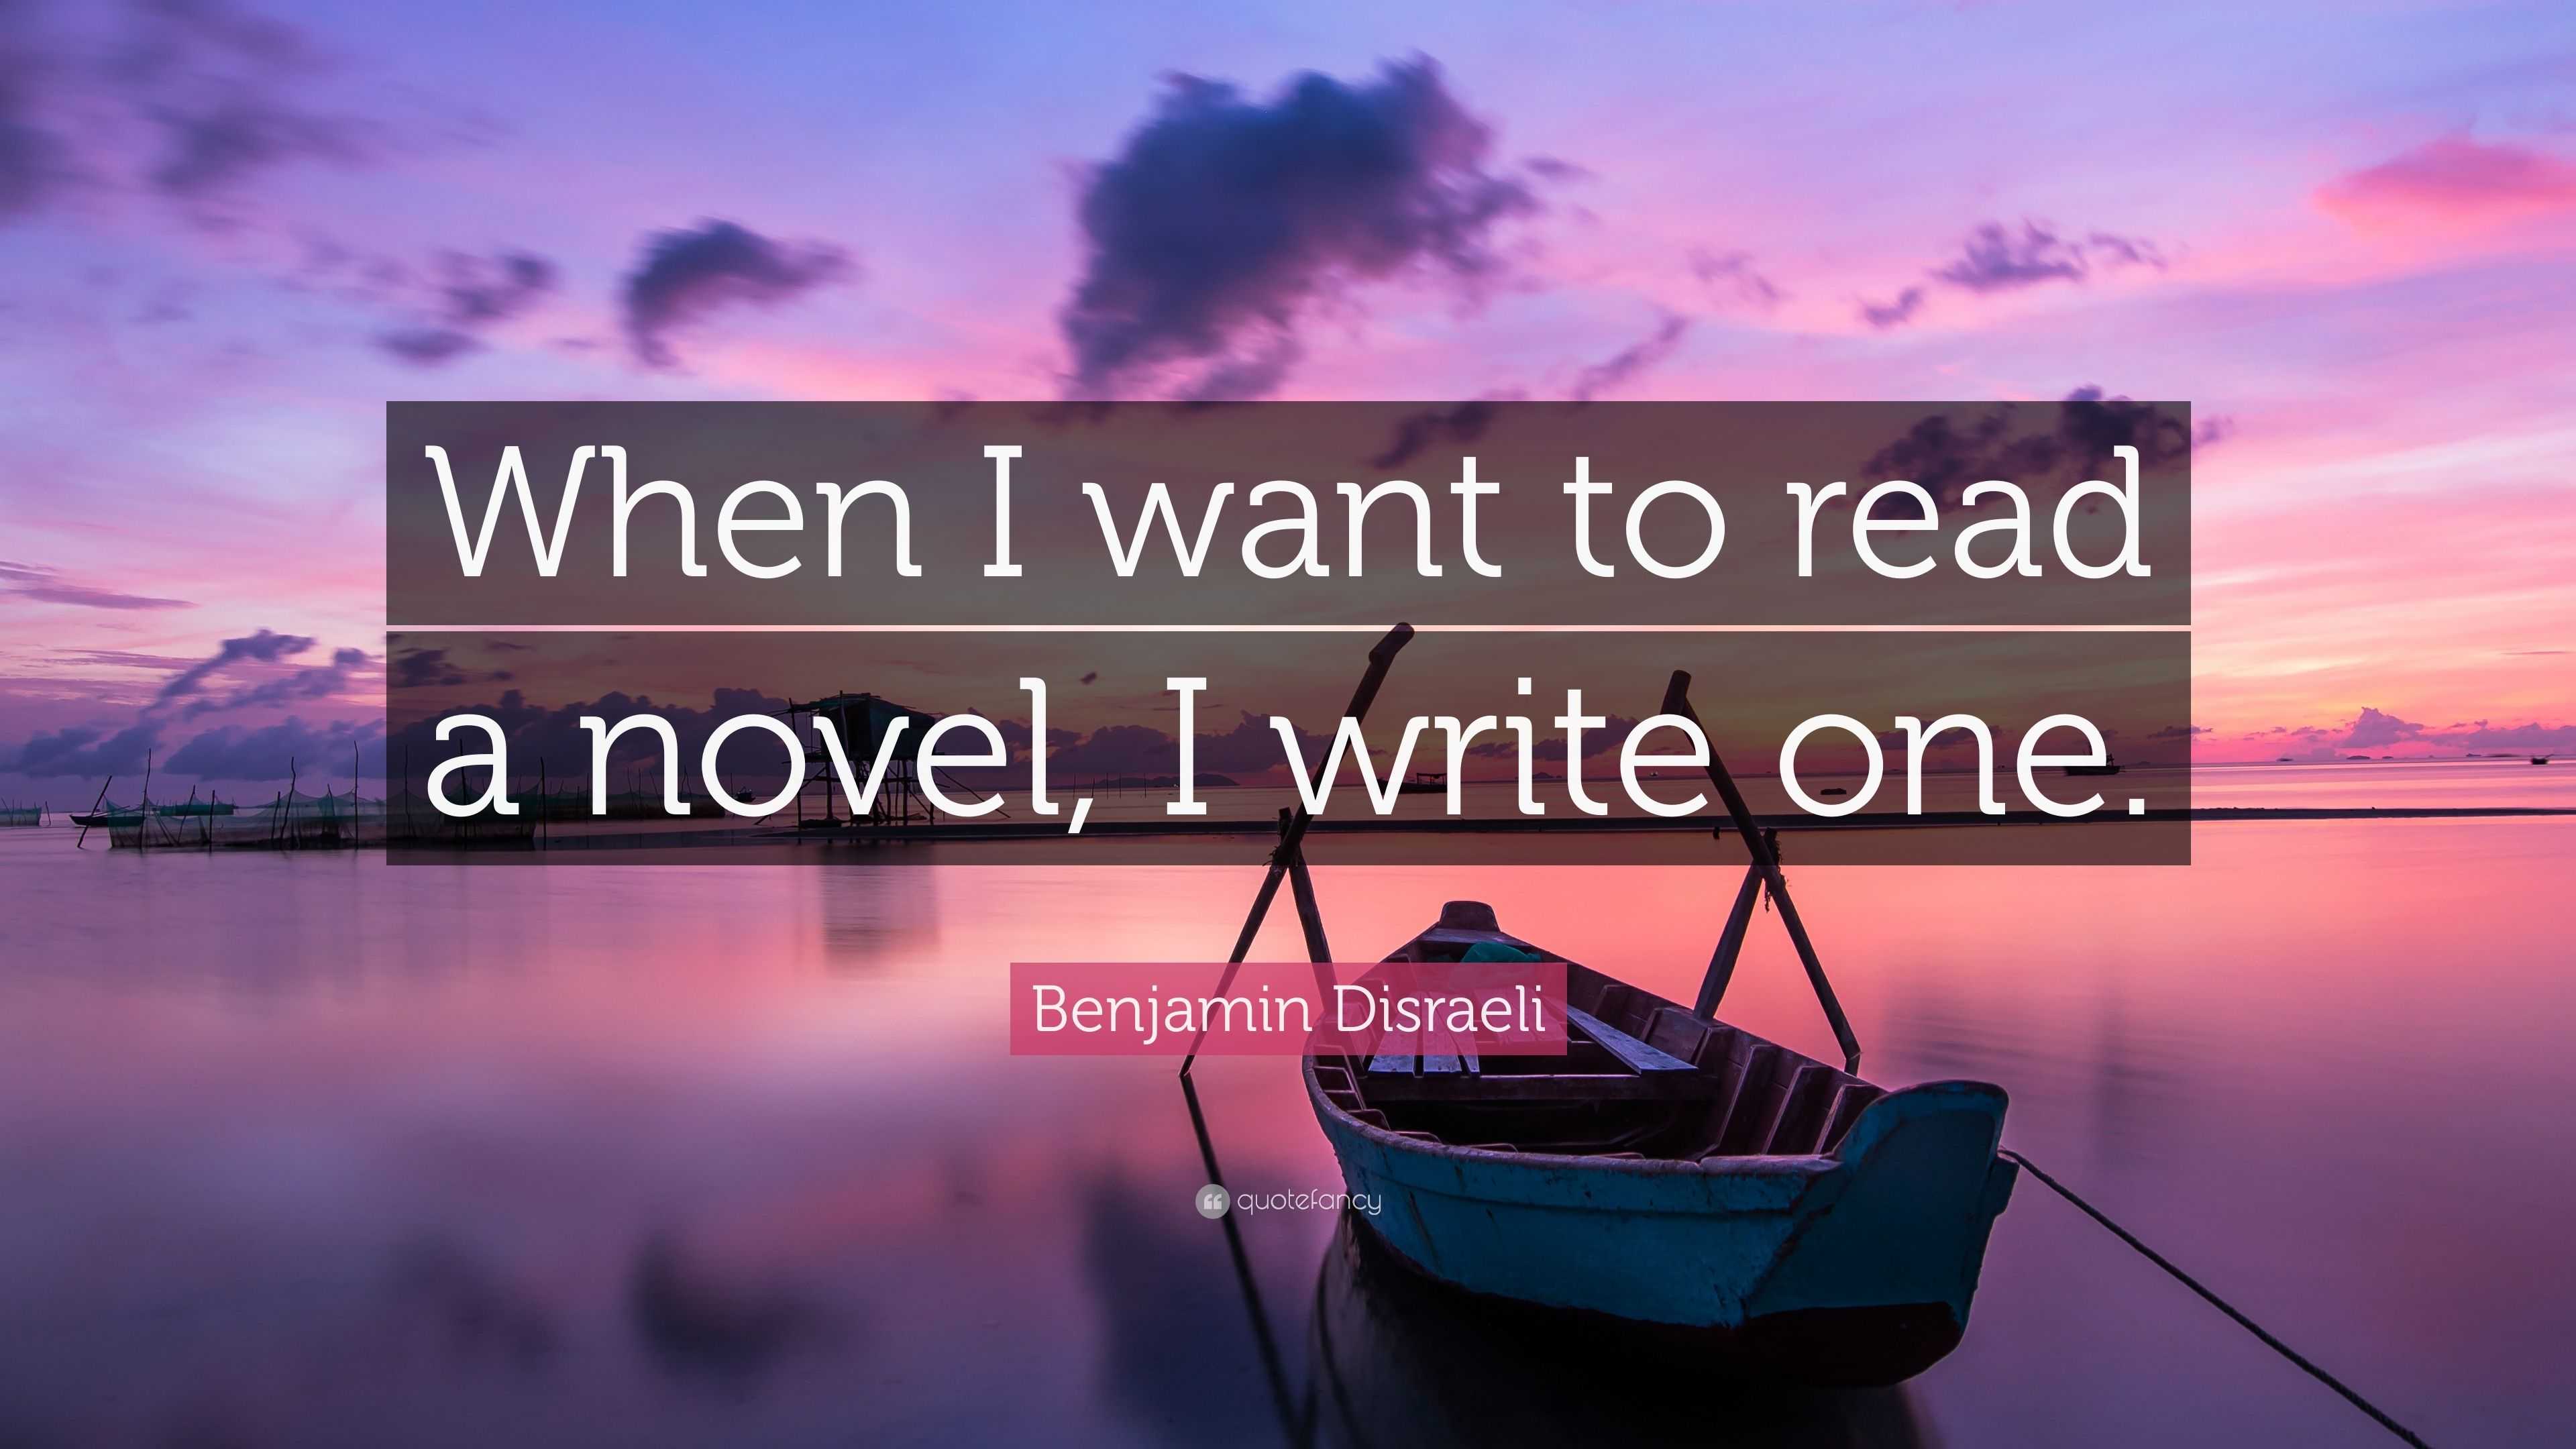 Ready to Write a Novel?